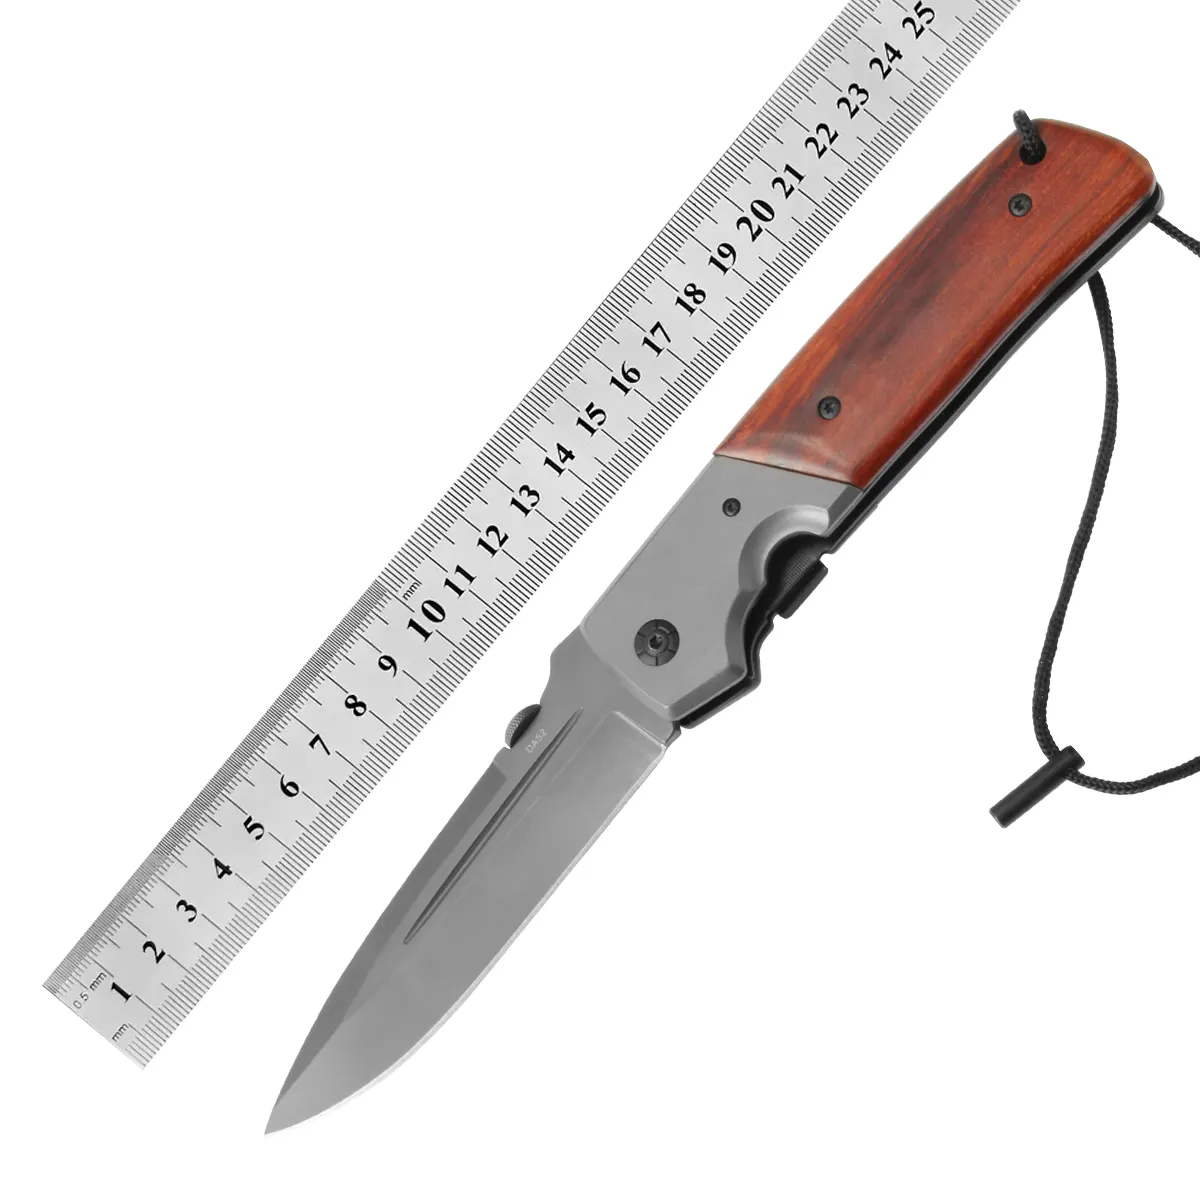 DABR 52 새로운 스타일 멀티 도구 접이식 포켓 나이프 나무 손잡이와 휴대용 캠핑 칼